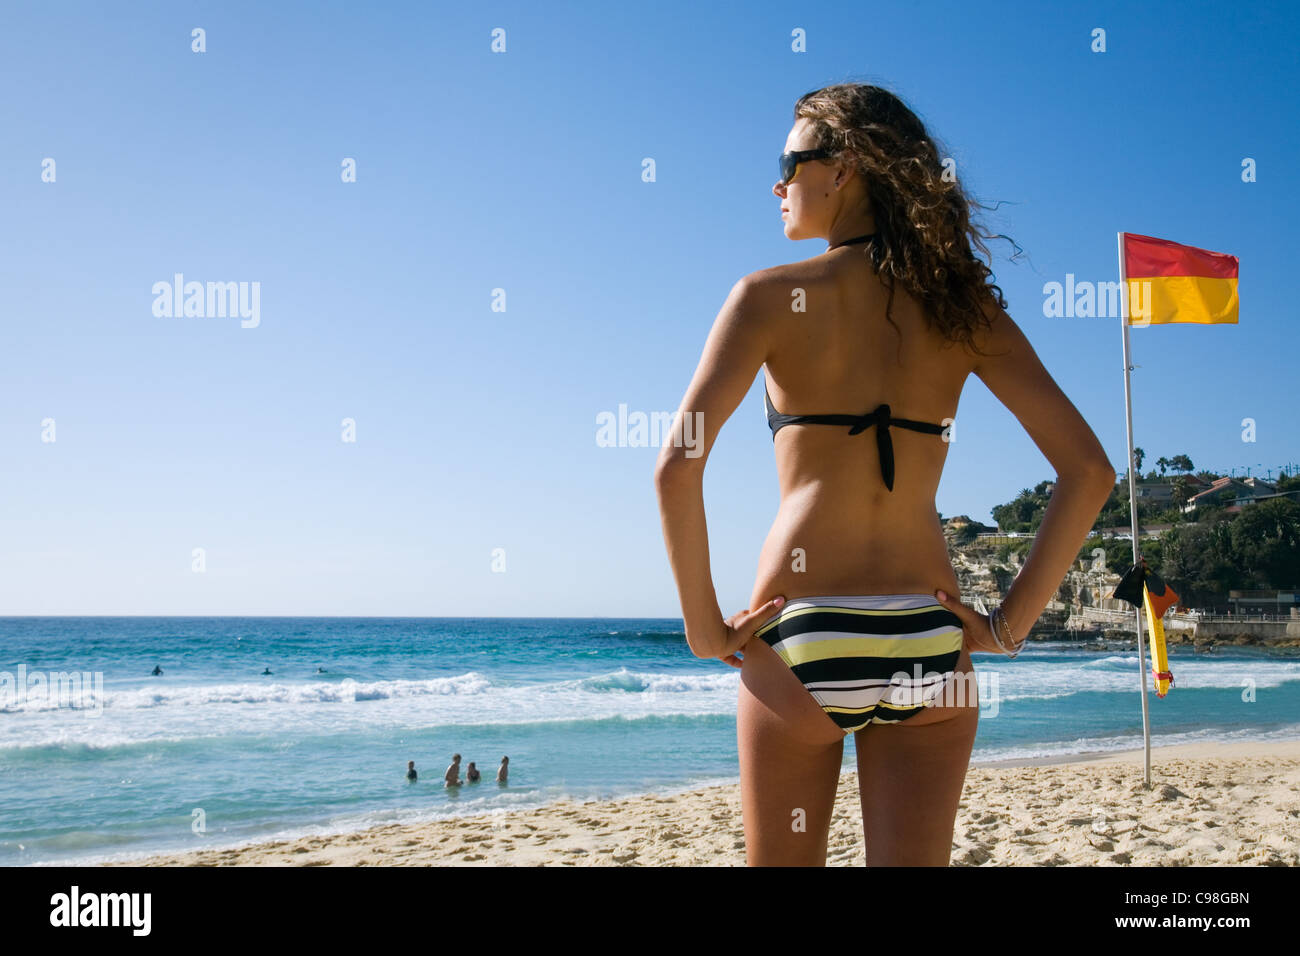 Frau im Bikini stehen neben roten und gelben Surf Lifesaving Flagge am Strand. Sydney, New South Wales, Australien Stockfoto